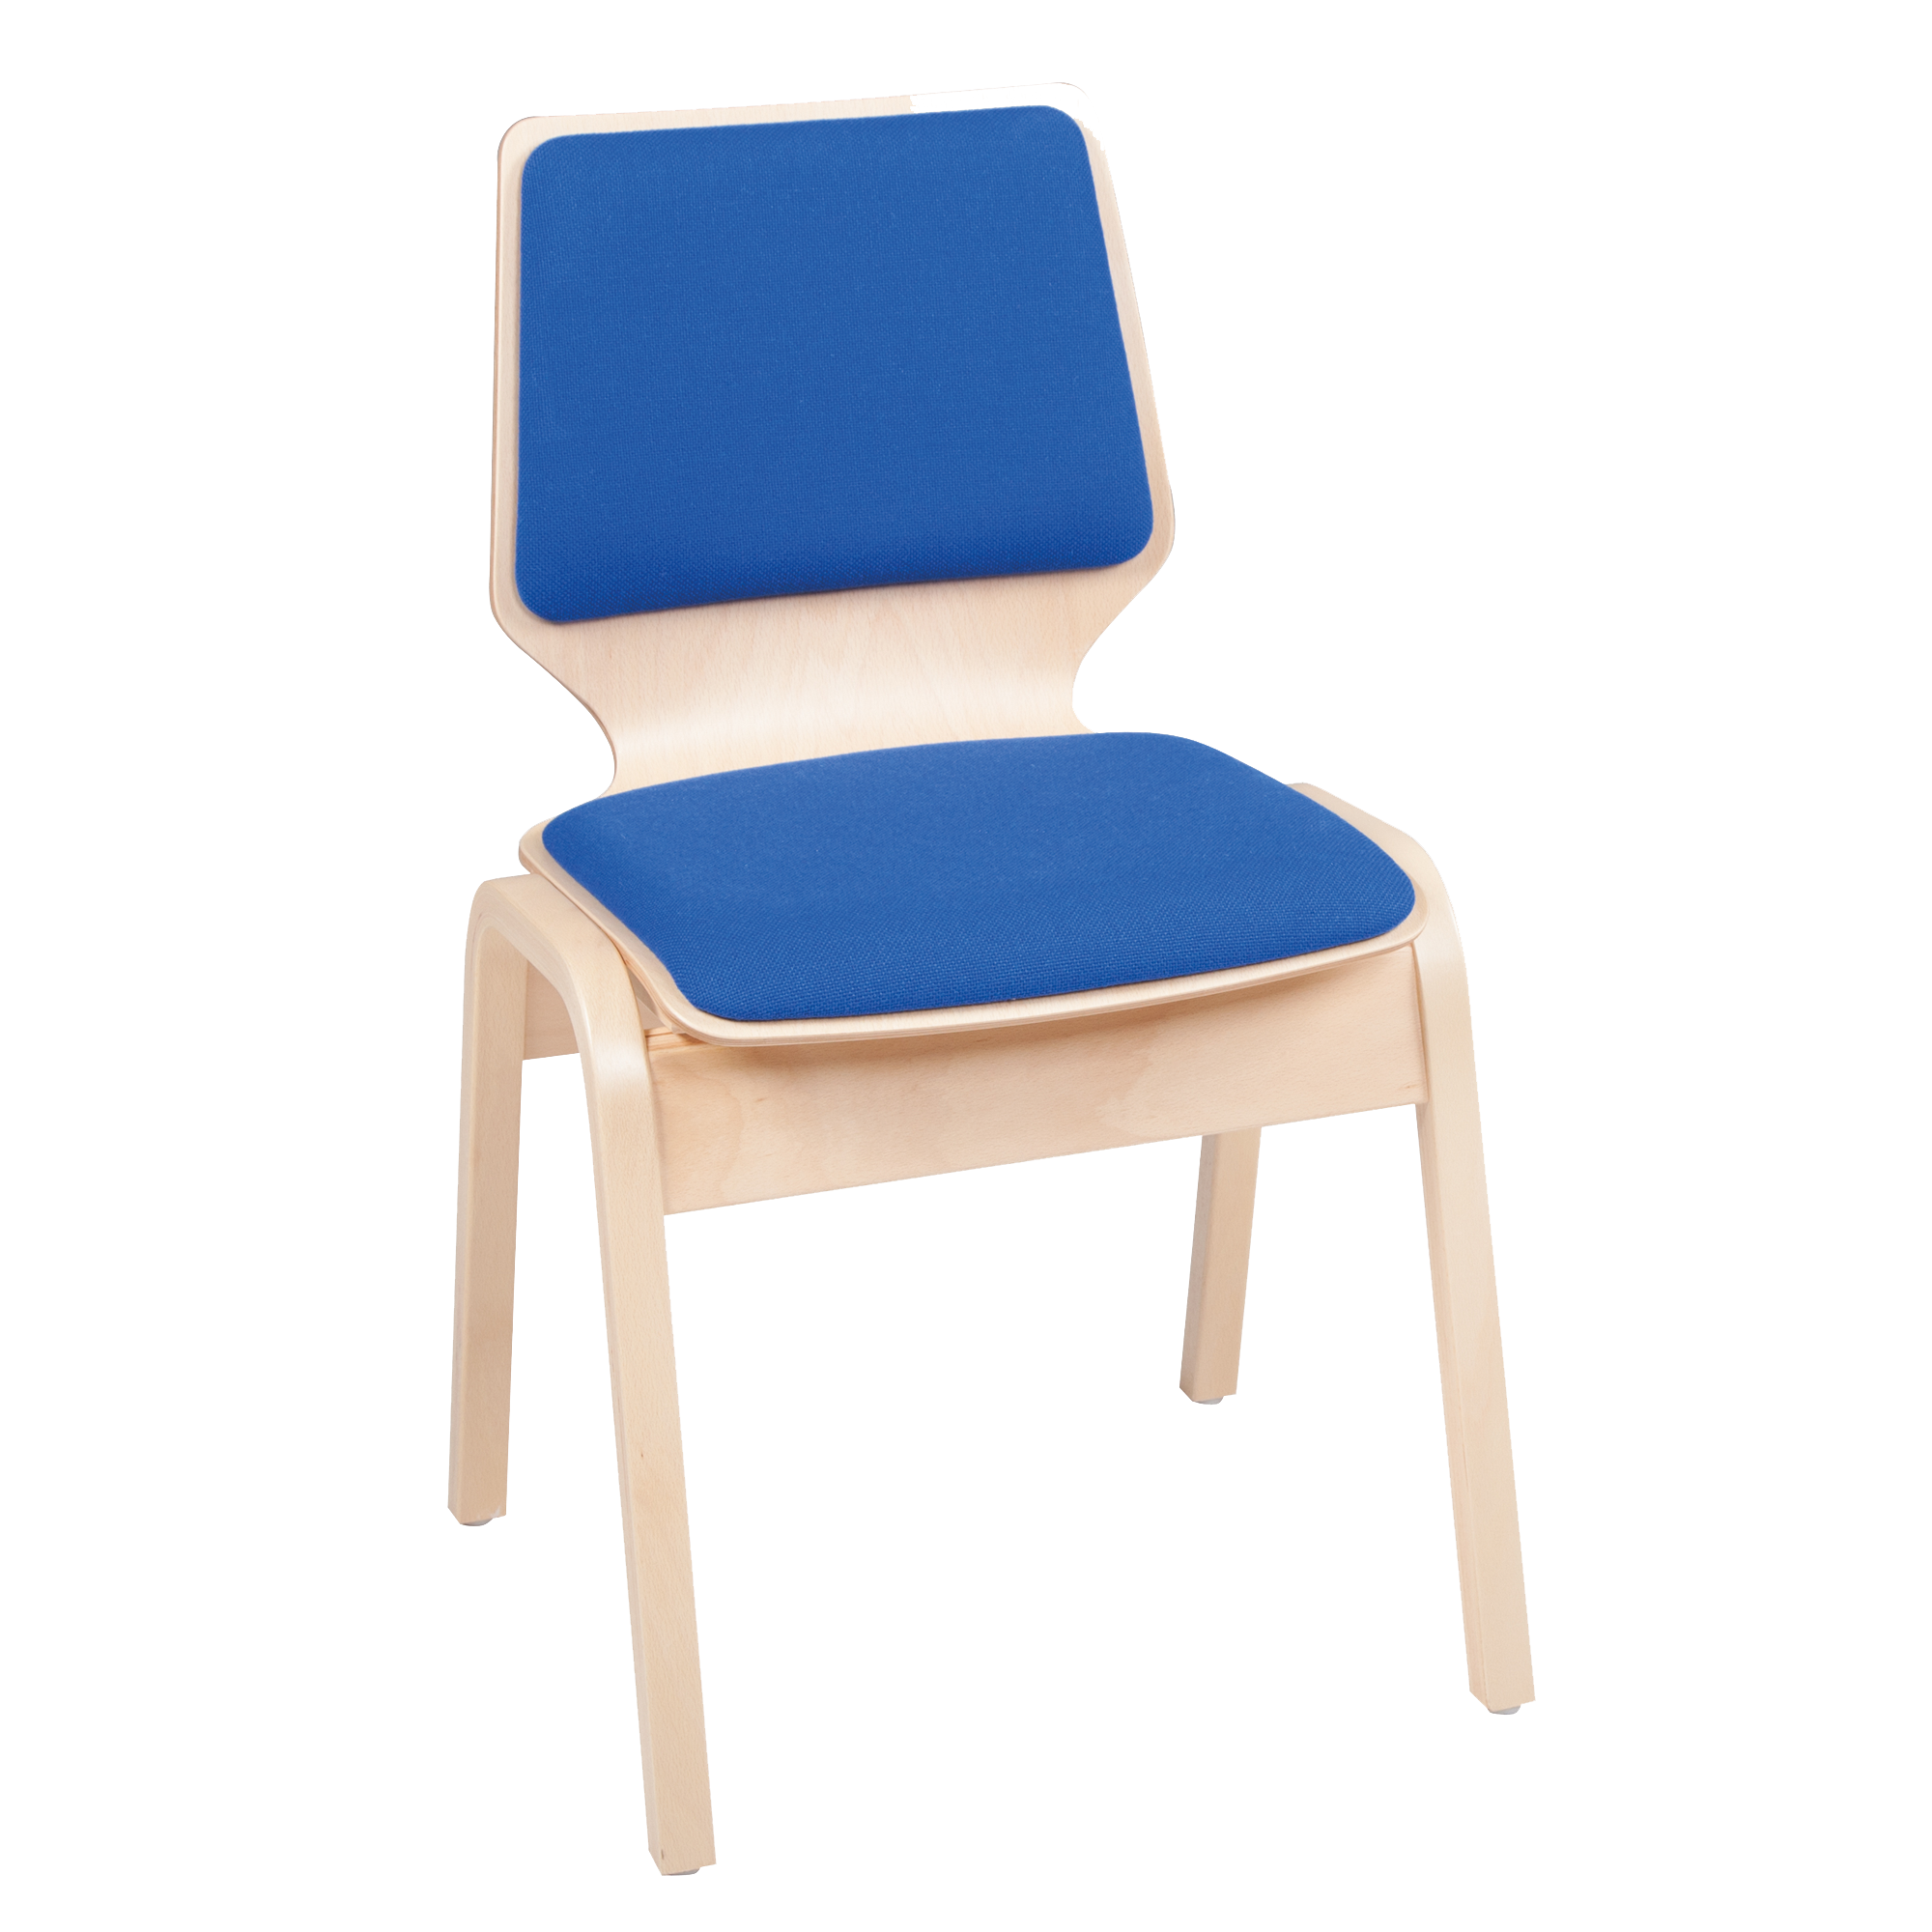 Moritz stapelbare stoel met multiplex frame